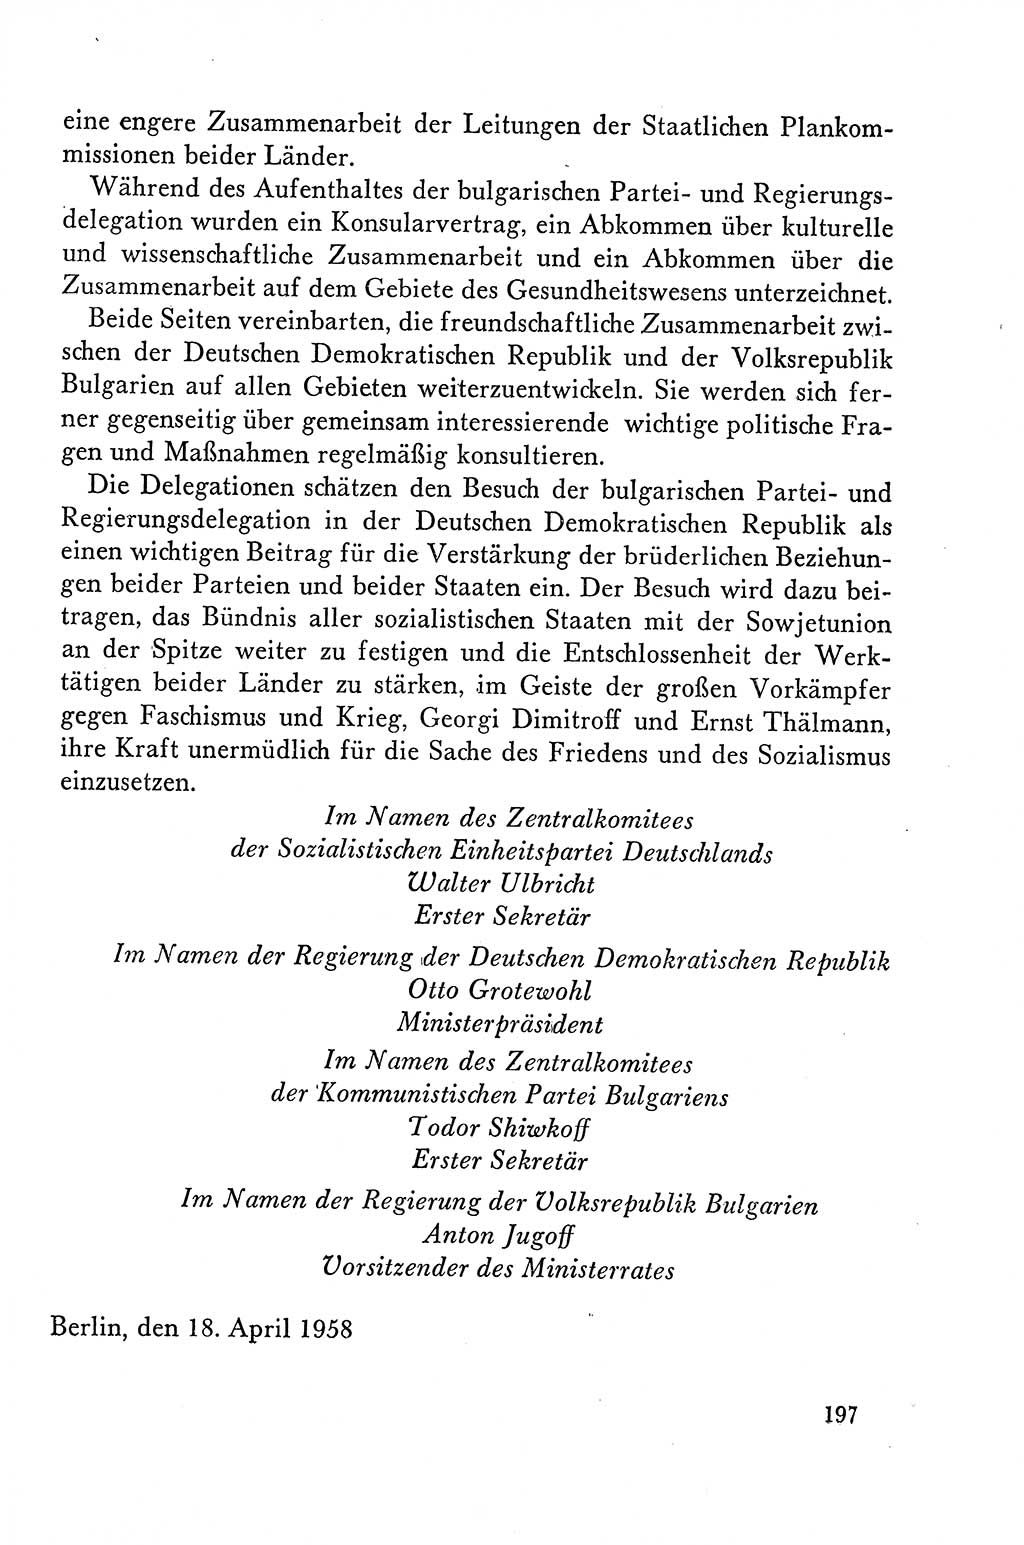 Dokumente der Sozialistischen Einheitspartei Deutschlands (SED) [Deutsche Demokratische Republik (DDR)] 1958-1959, Seite 197 (Dok. SED DDR 1958-1959, S. 197)